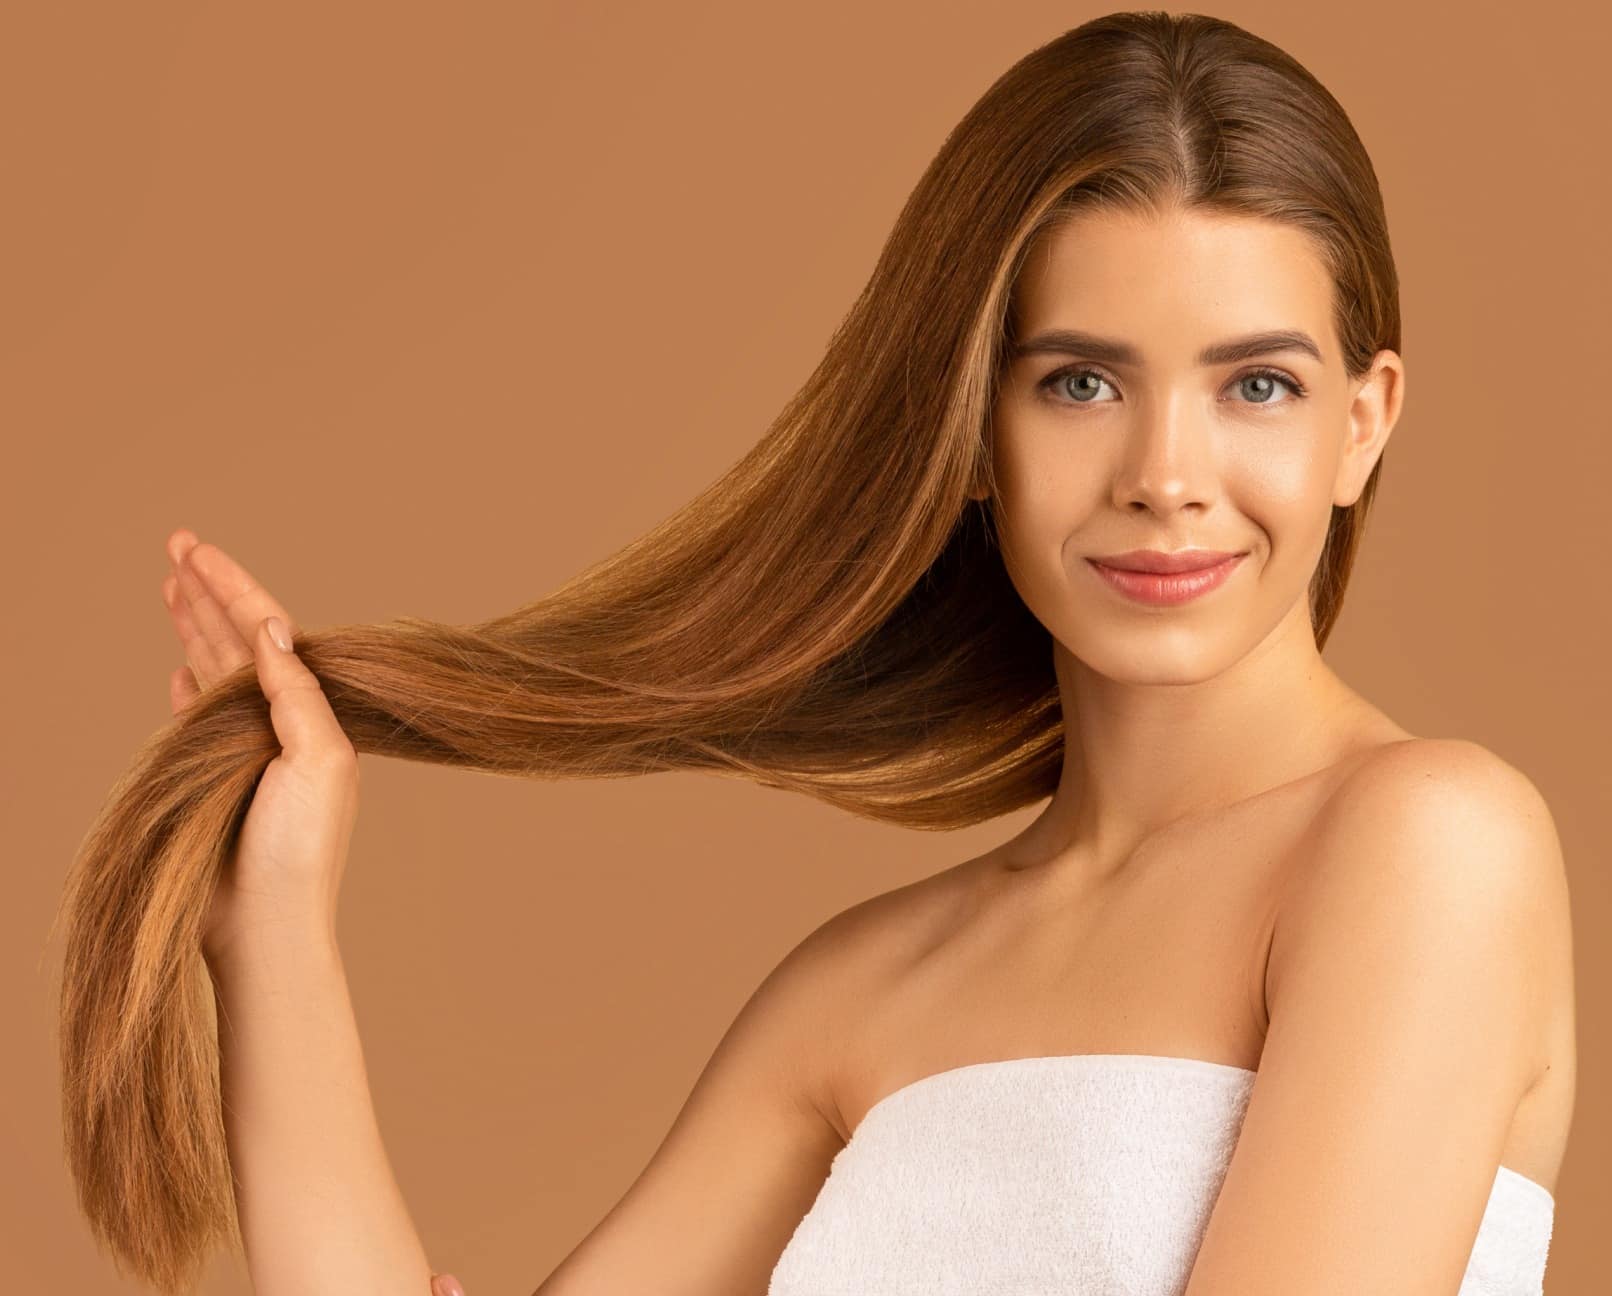 PRP cheveux, comment traiter la chute de cheveux | Médecine esthétique, traitement cheveux | Paris | Lasério